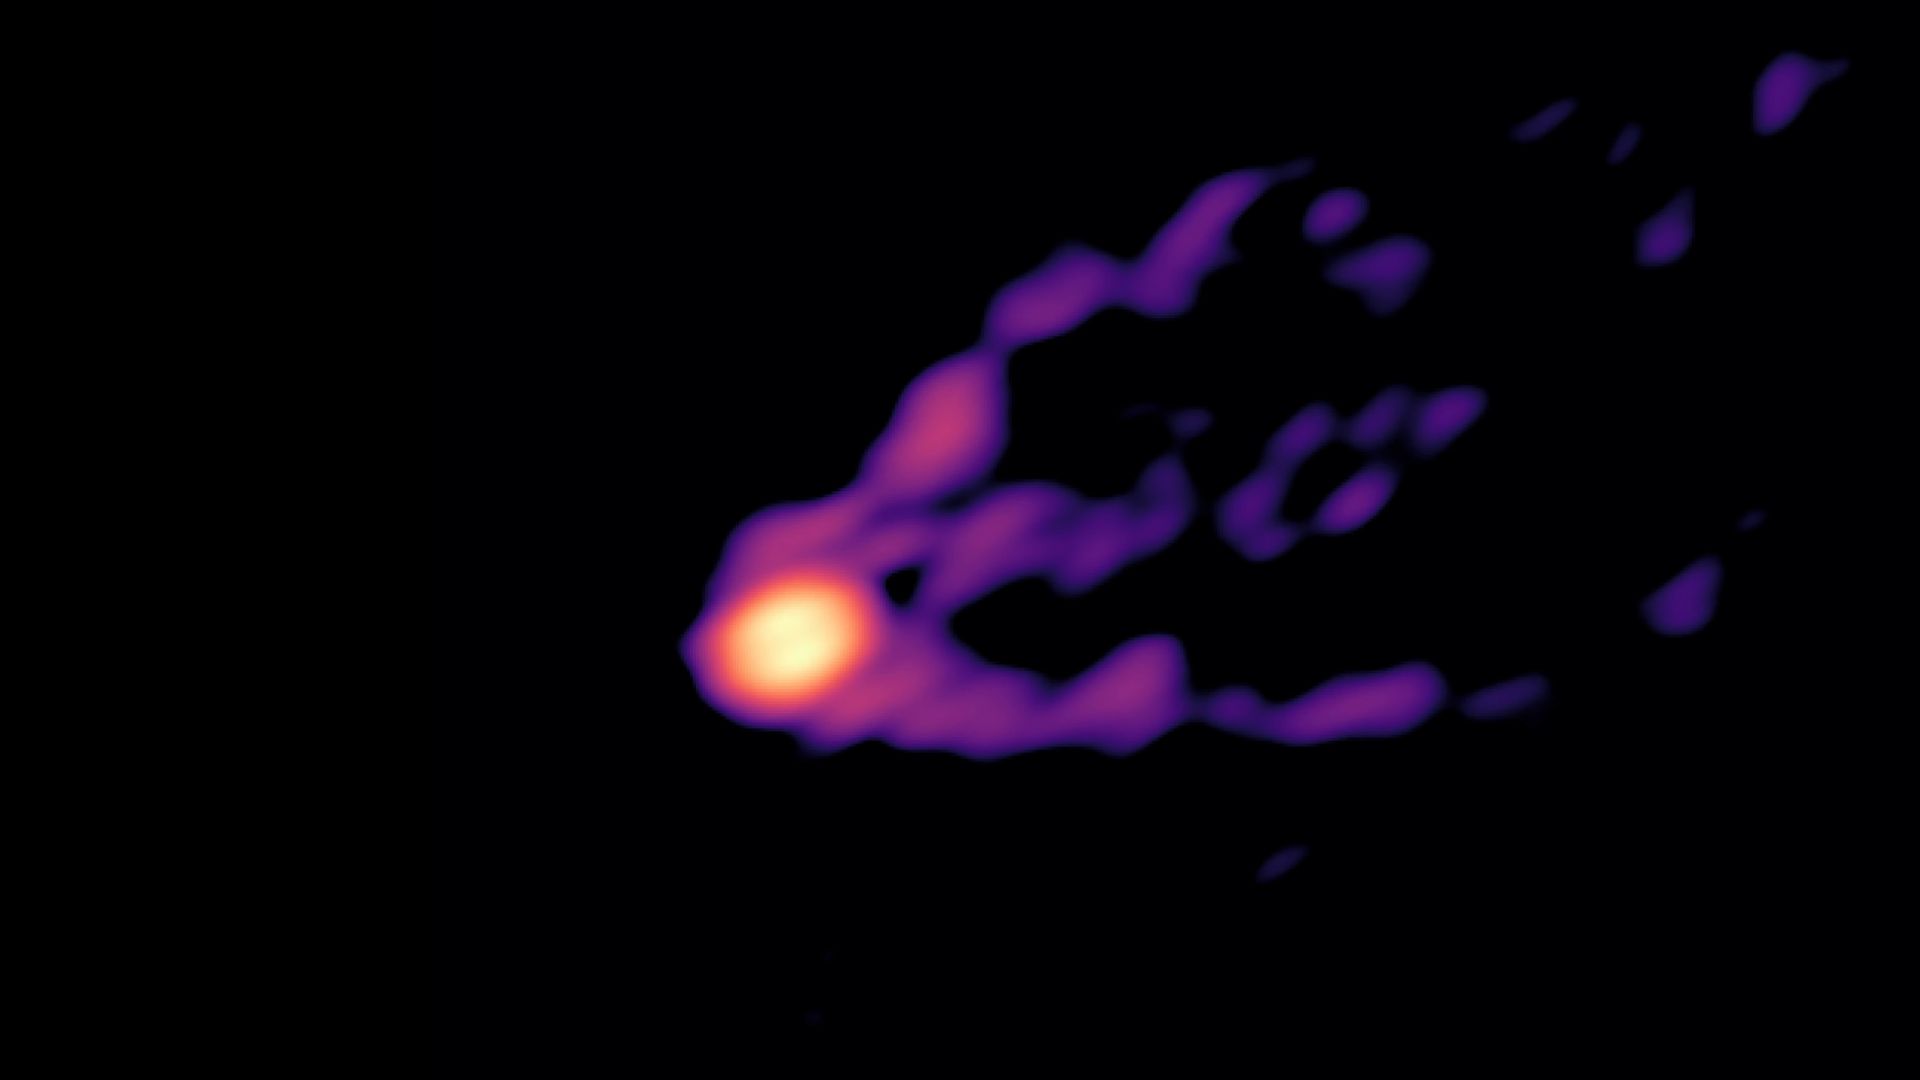 Dit beeld is uniek: het toont een zwart gat en zijn krachtige straal